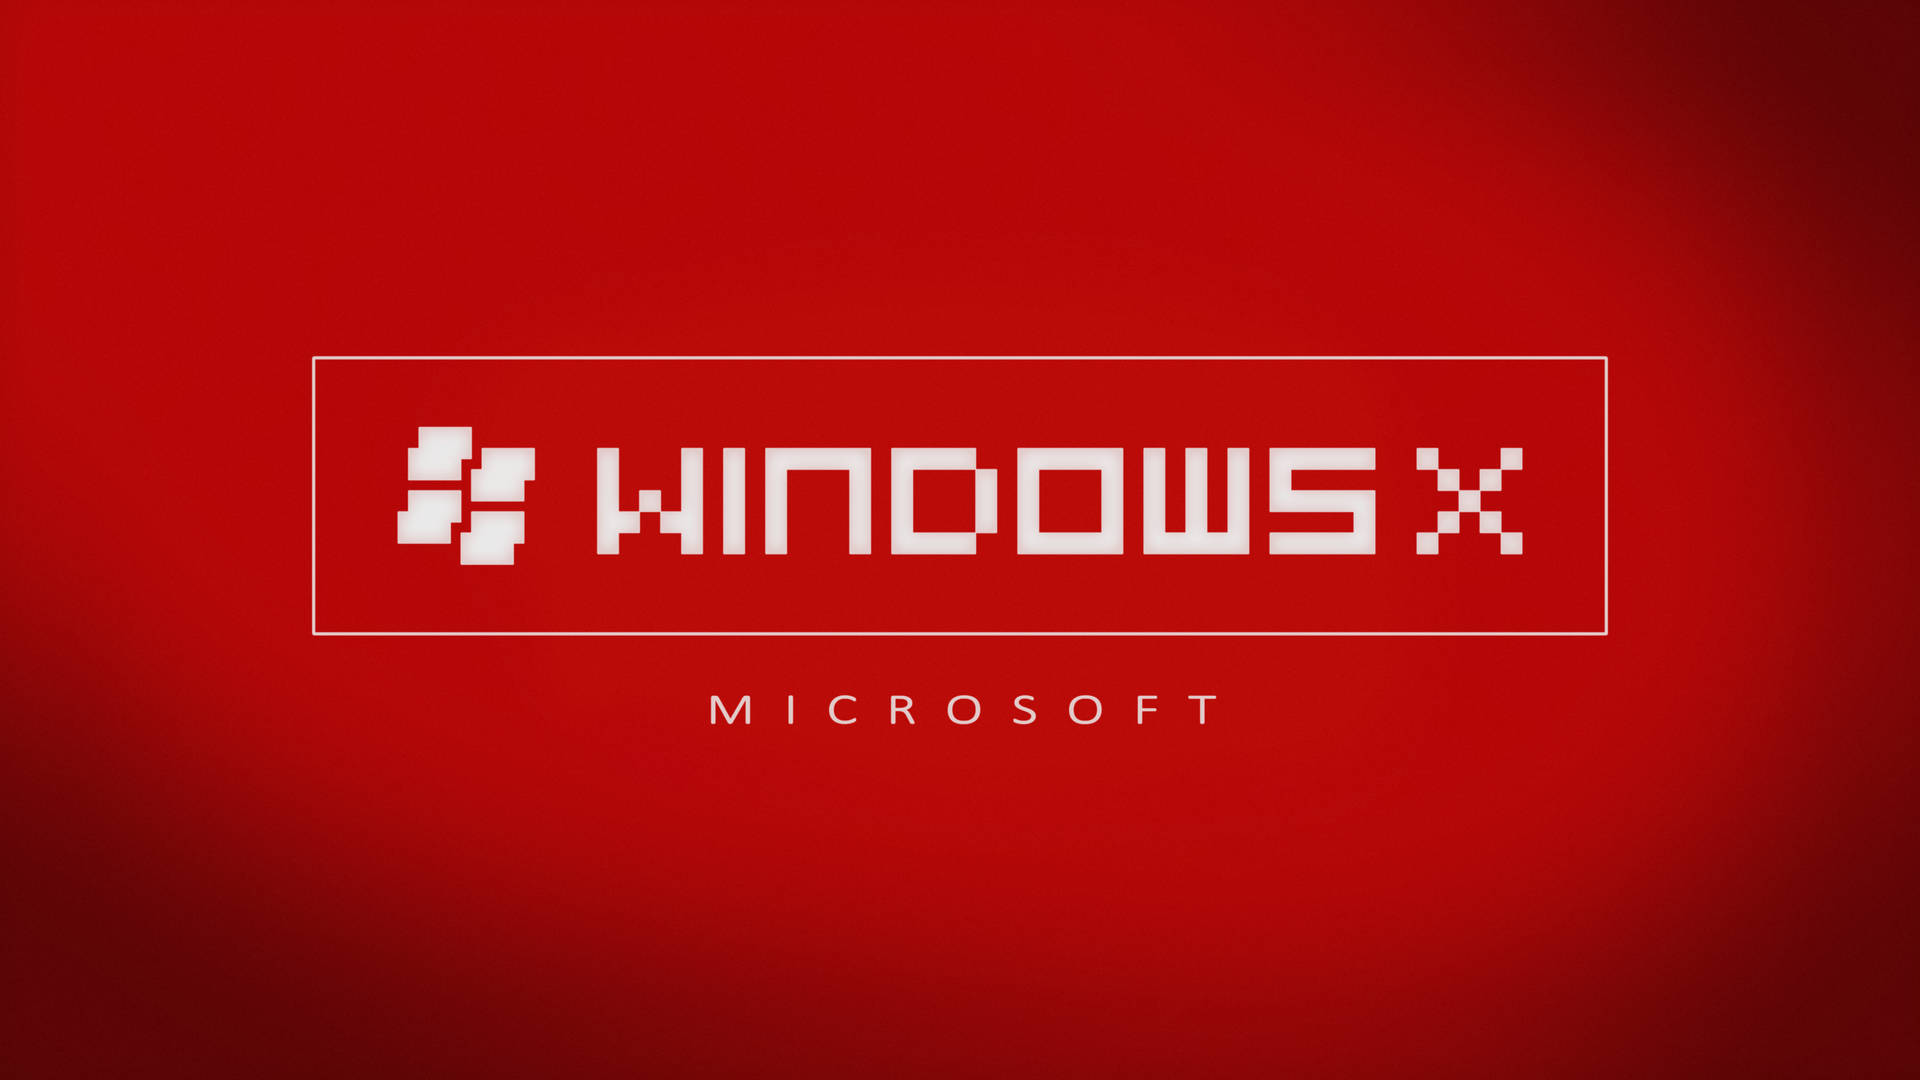 Windows 10 Hd Red X Wallpaper